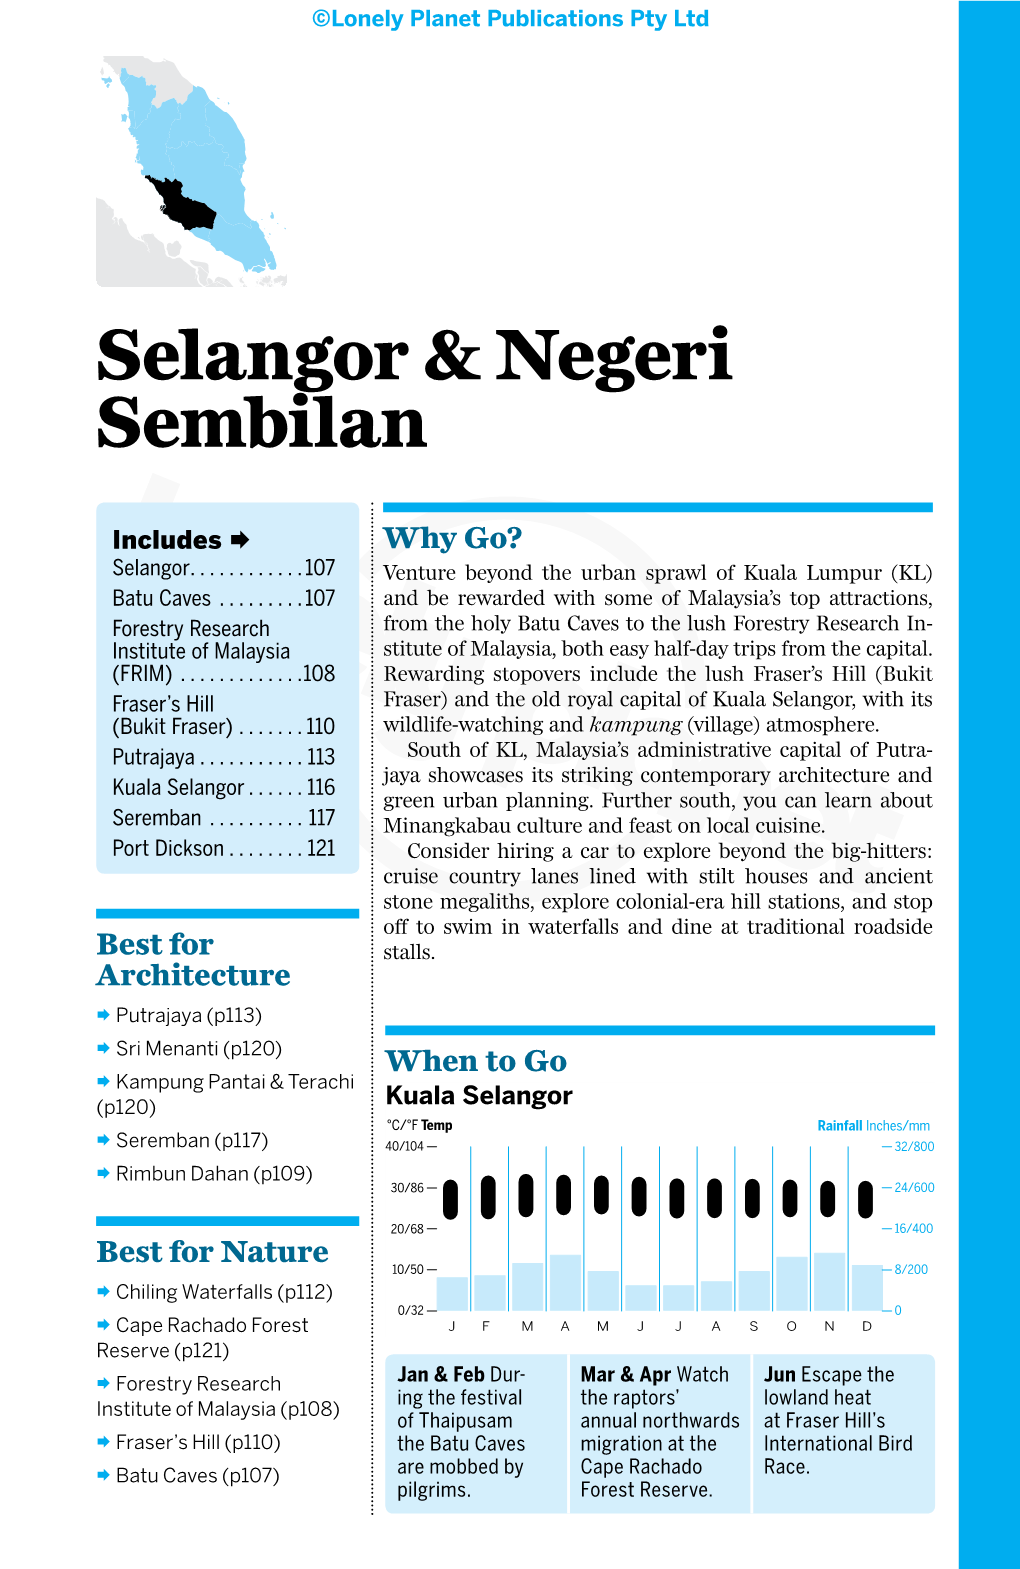 Selangor & Negeri Sembilan